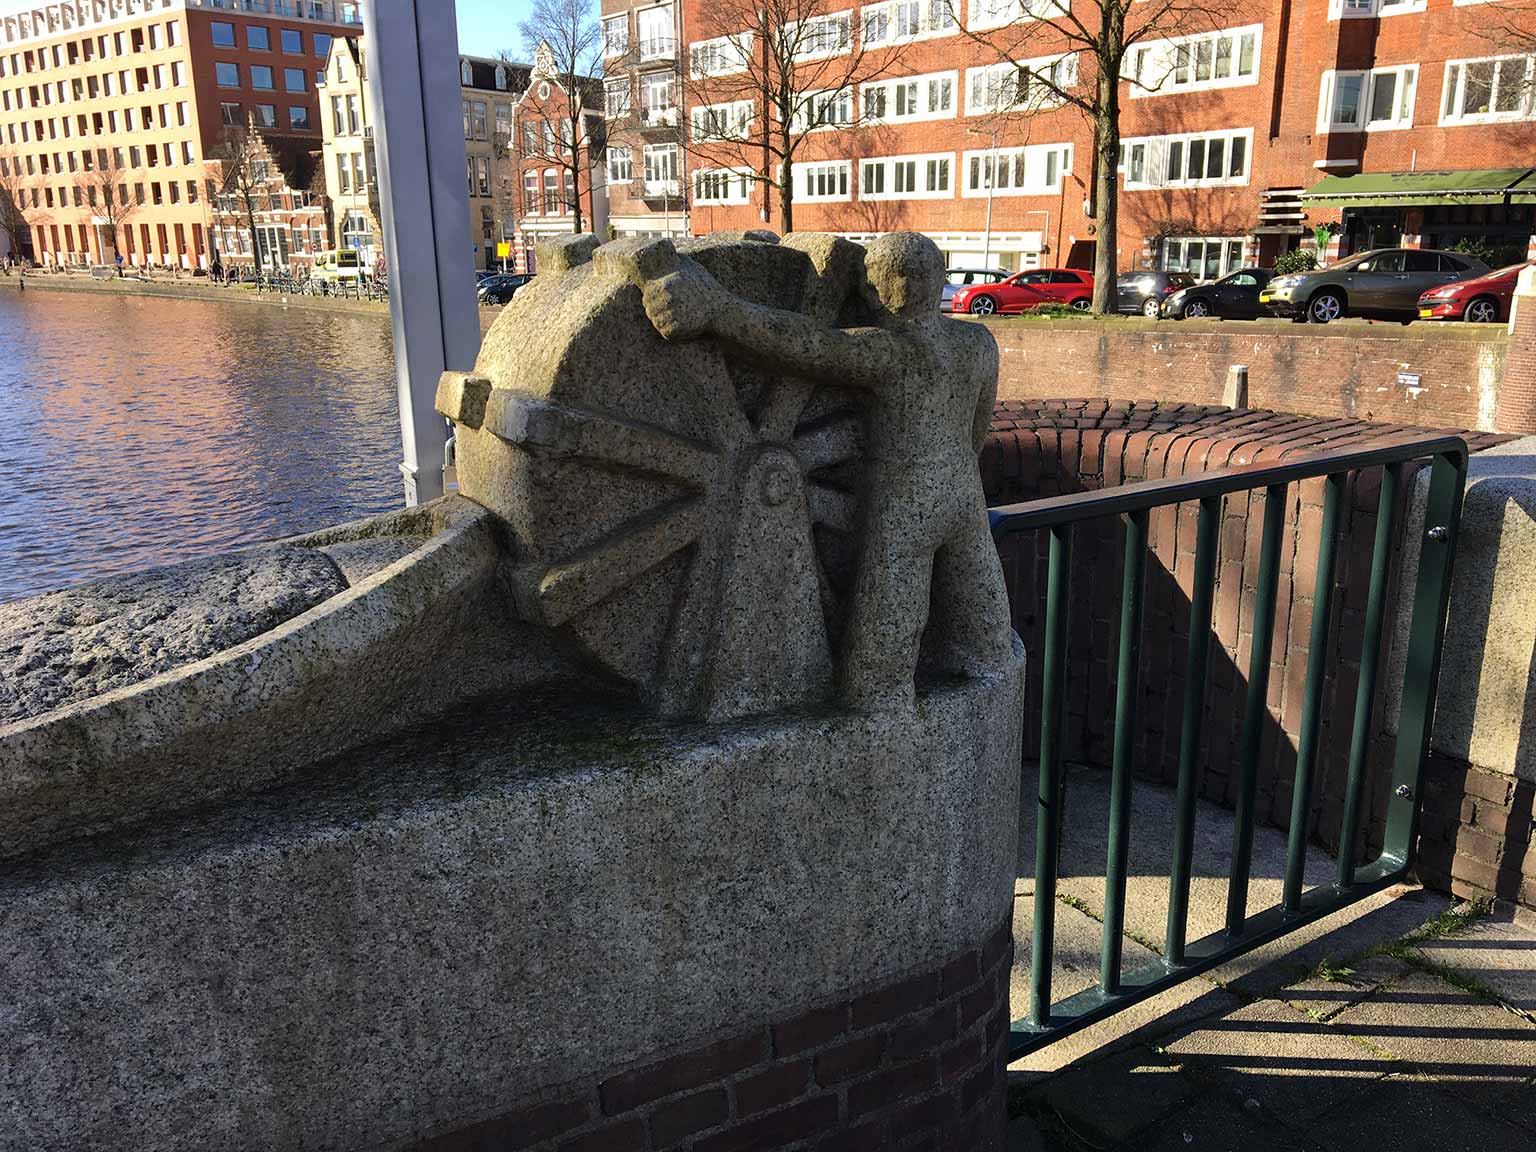 Overtoomse Sluisbrug across the Schinkel, Amsterdam, with sculpture by Hildo Krop